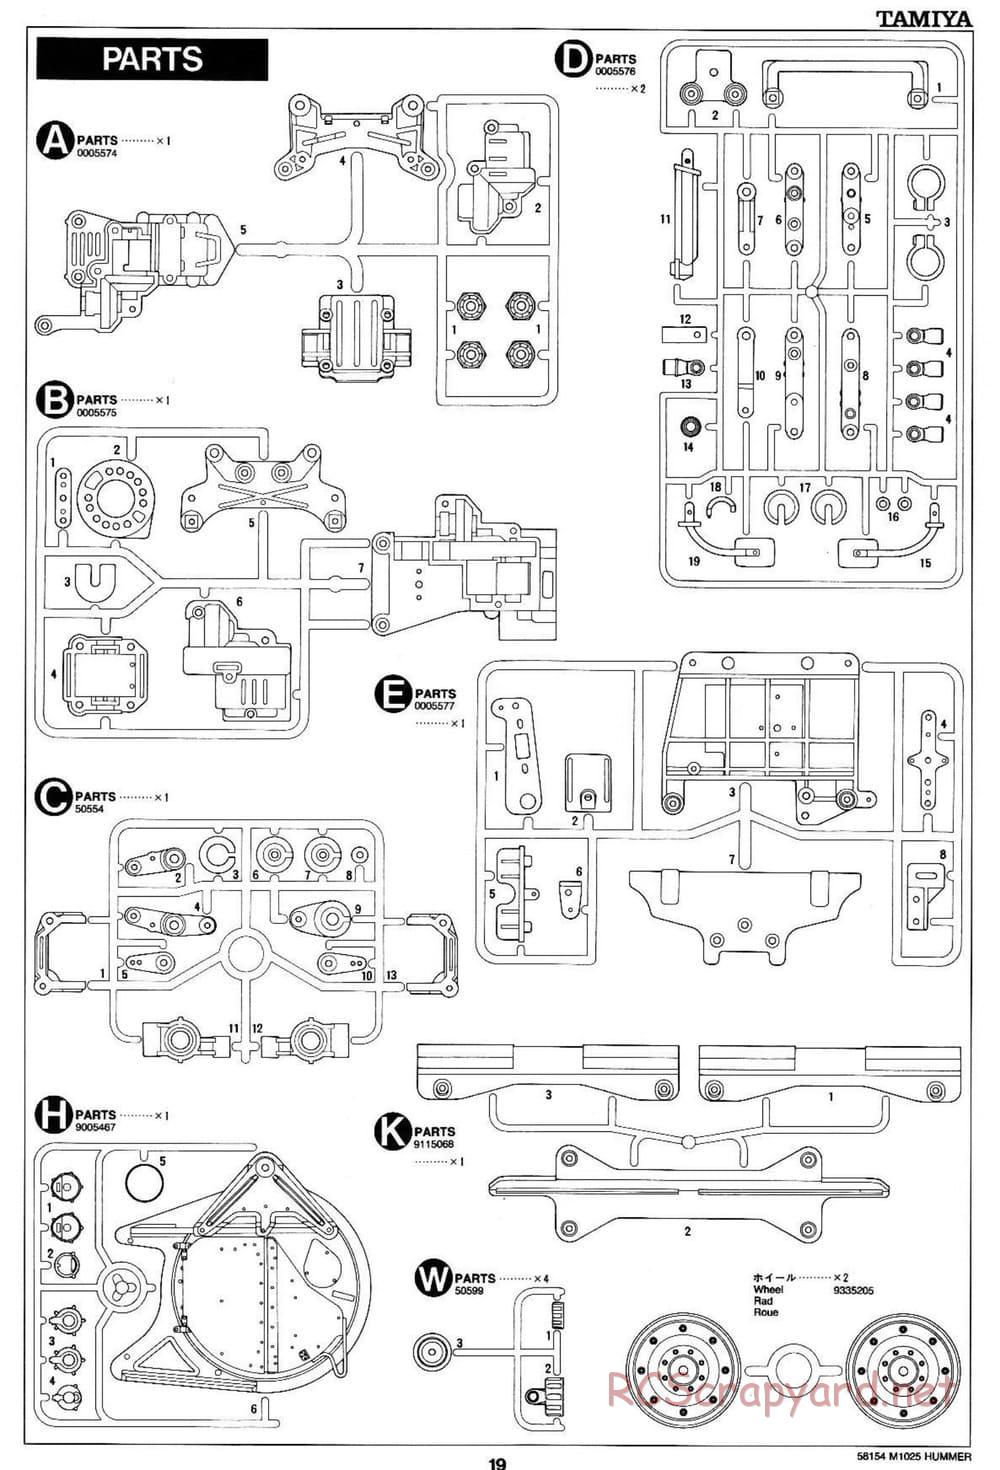 Tamiya - M1025 Hummer - TA-01 Chassis - Manual - Page 19